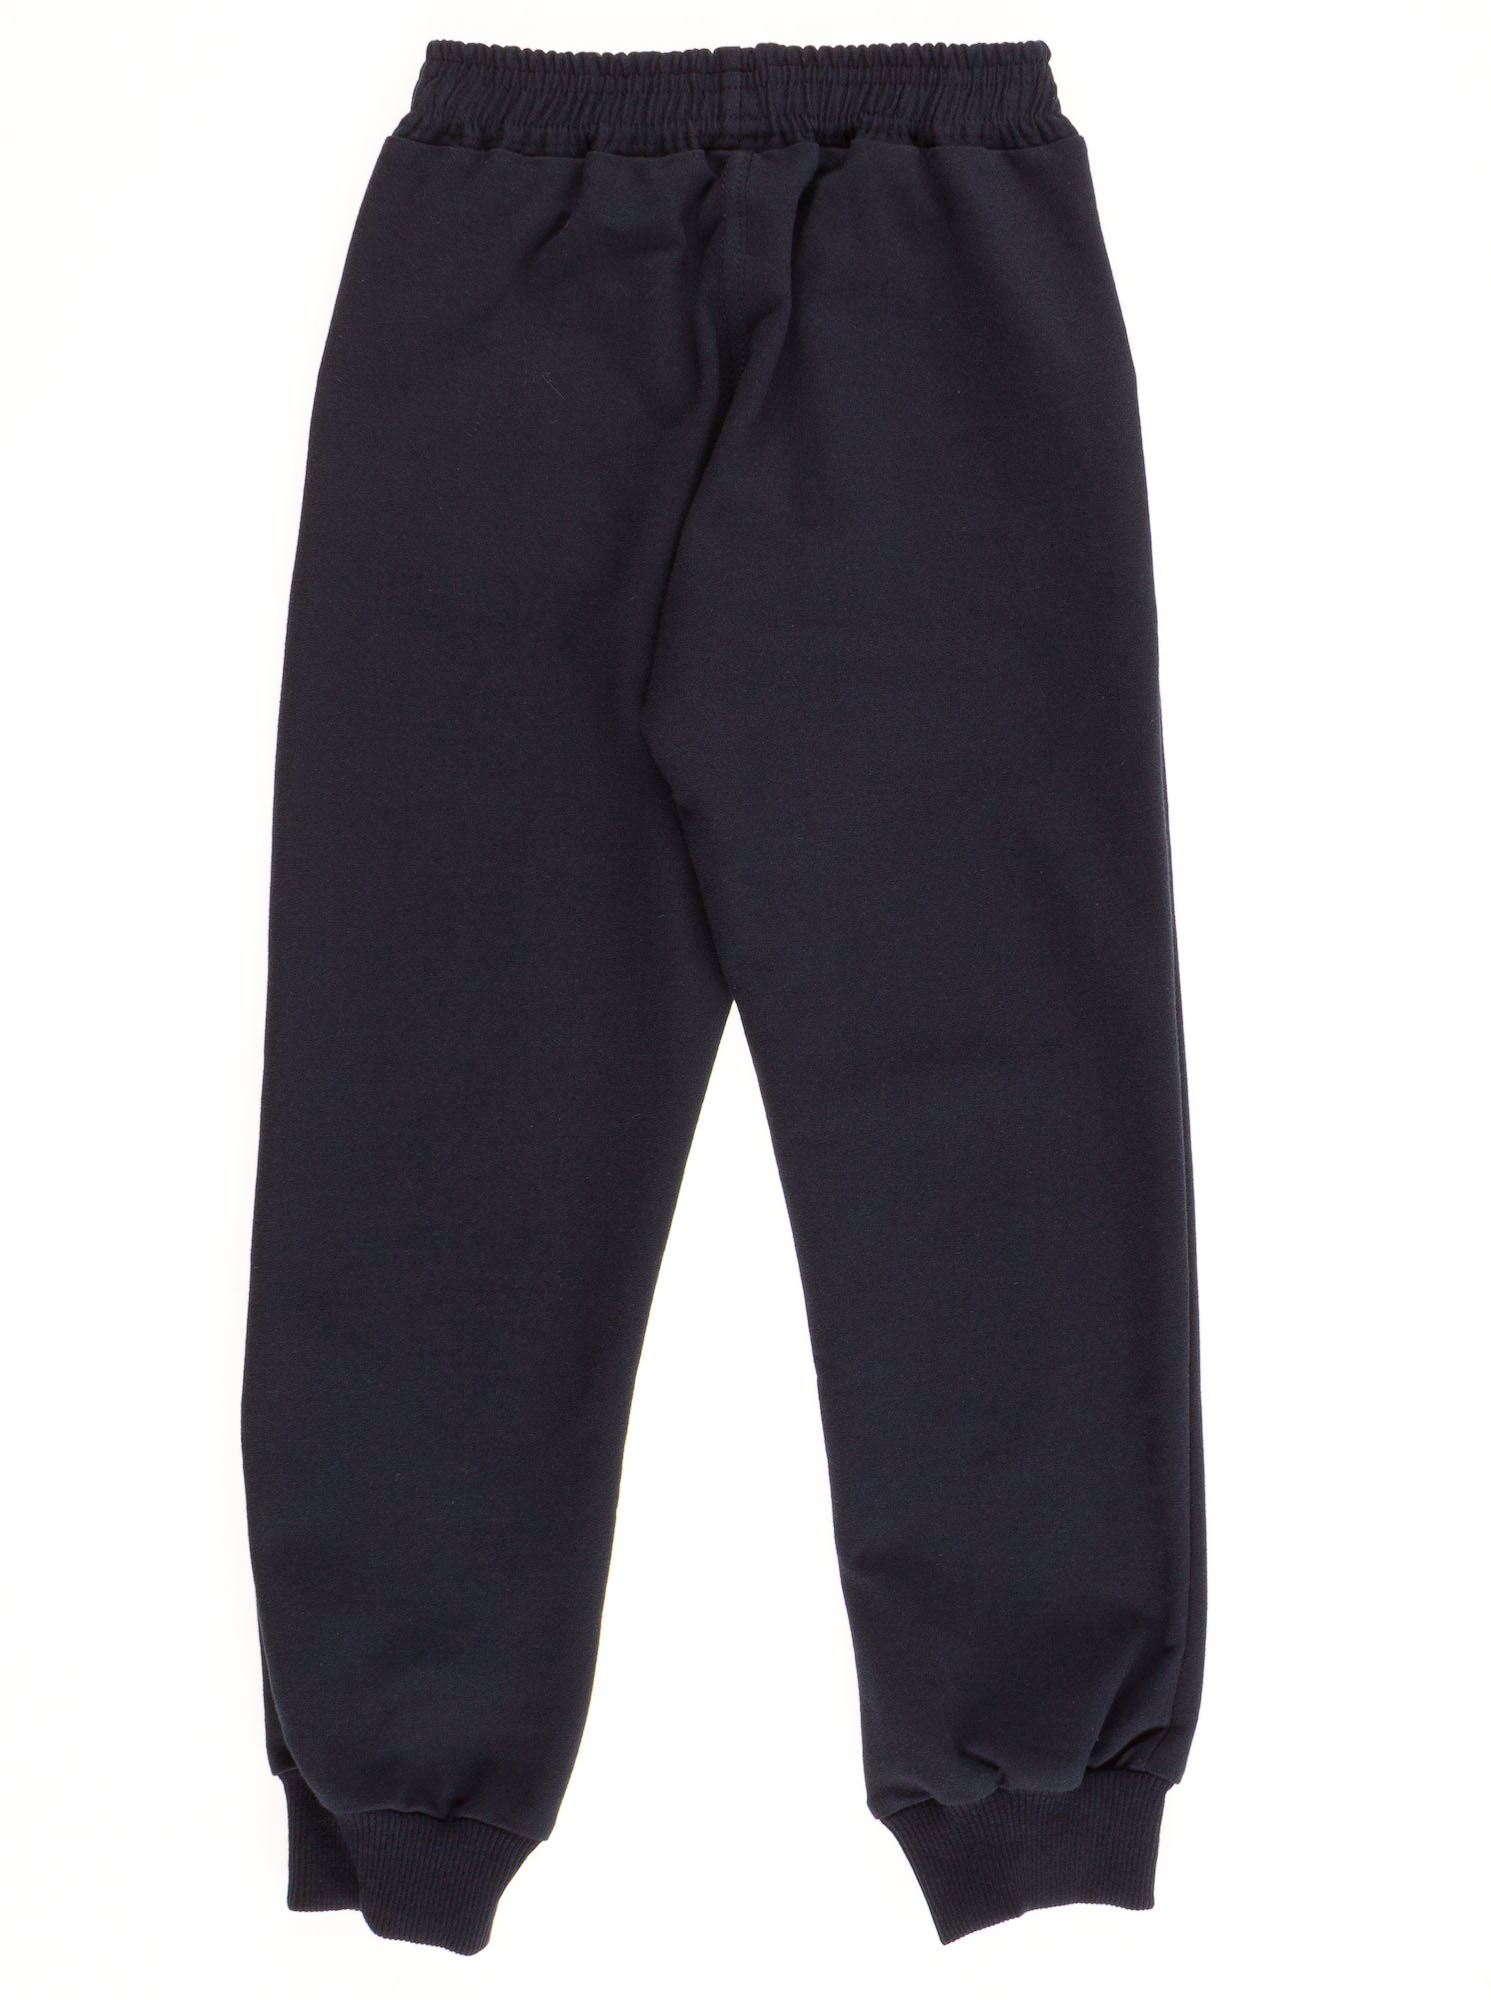 Спортивные штаны для мальчика Adidas темно-синие  - размеры